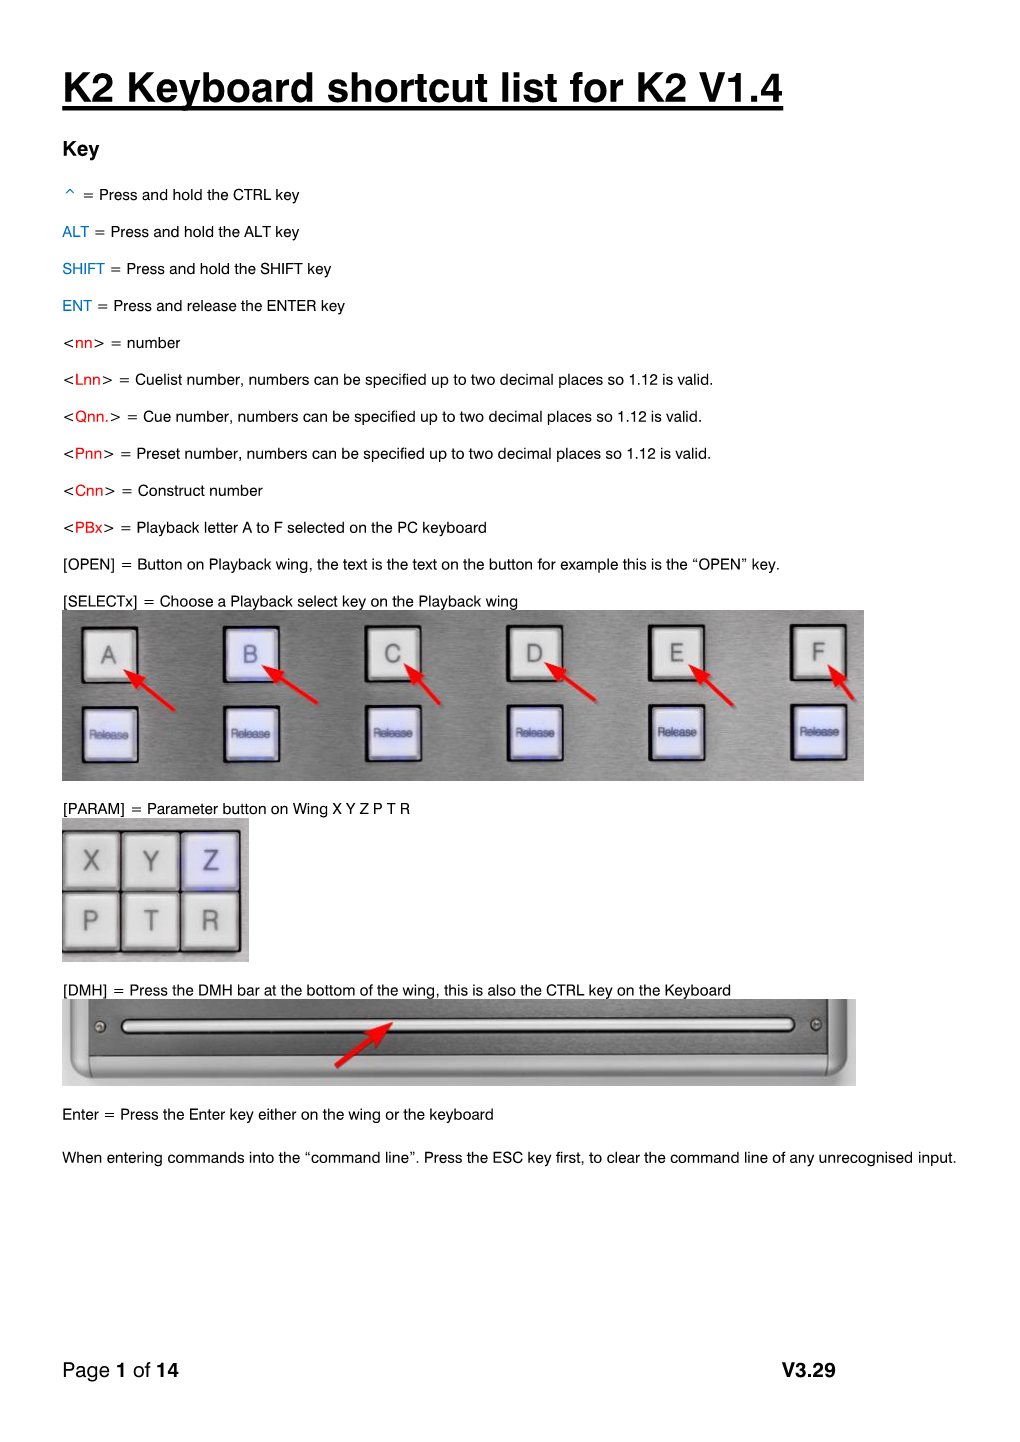 K2 Keyboard Shortcut List for K2 V1.4